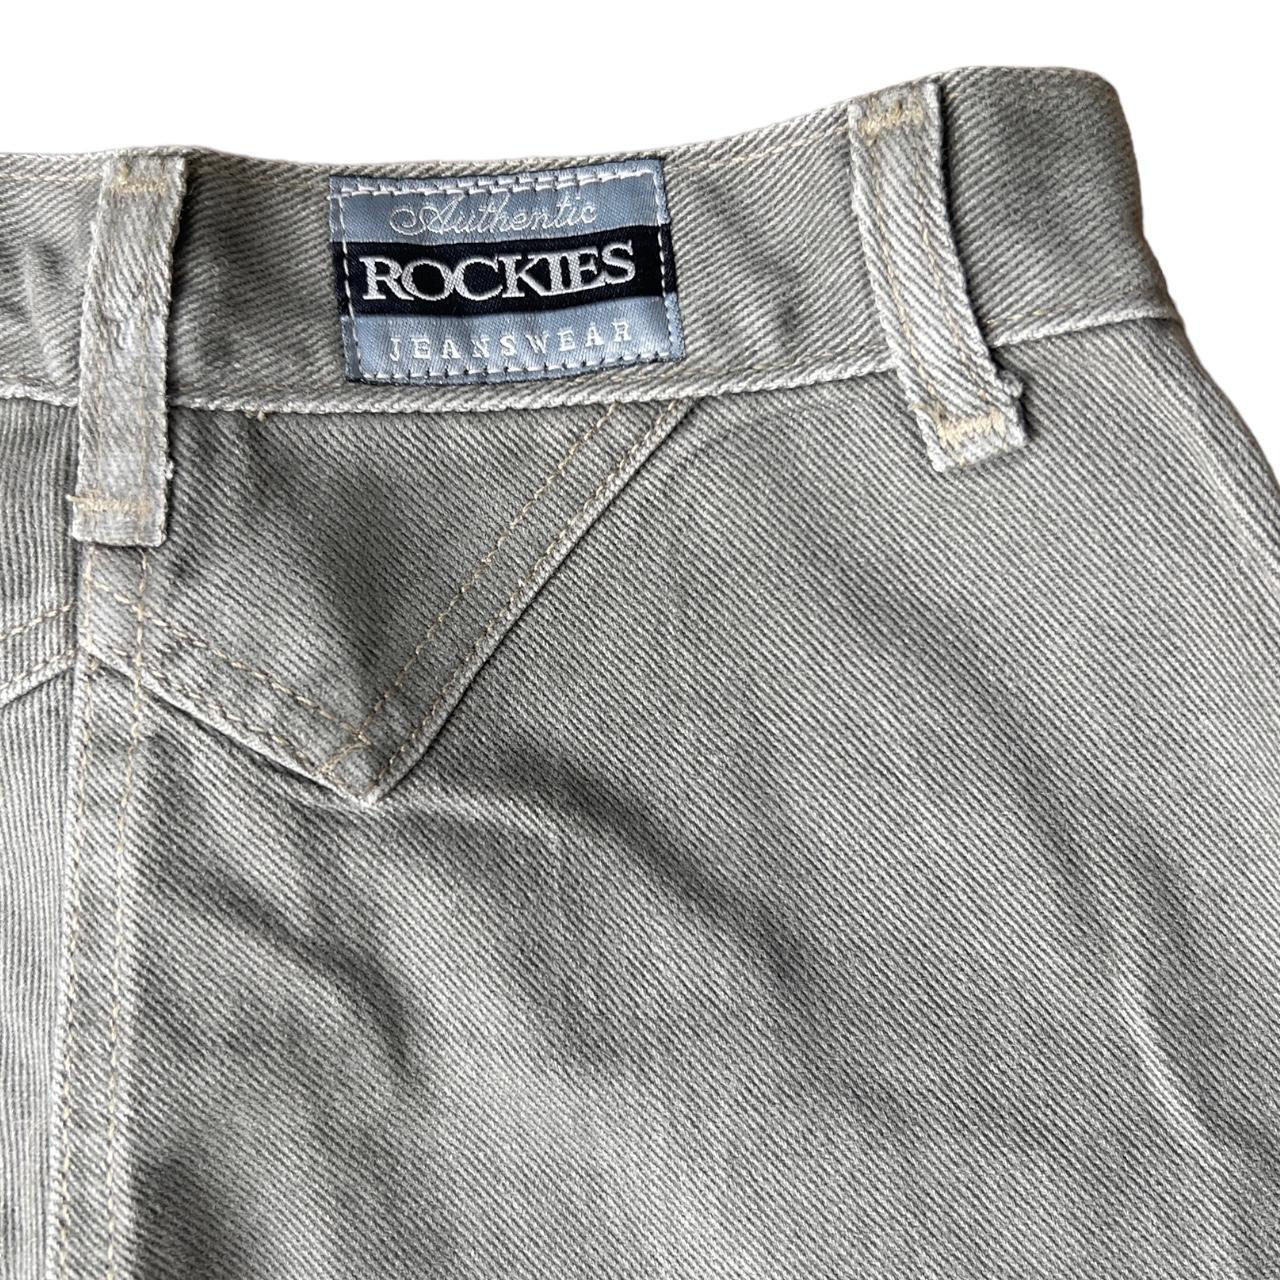 Vintage western Rockies denim jeans Silver/ grey... - Depop